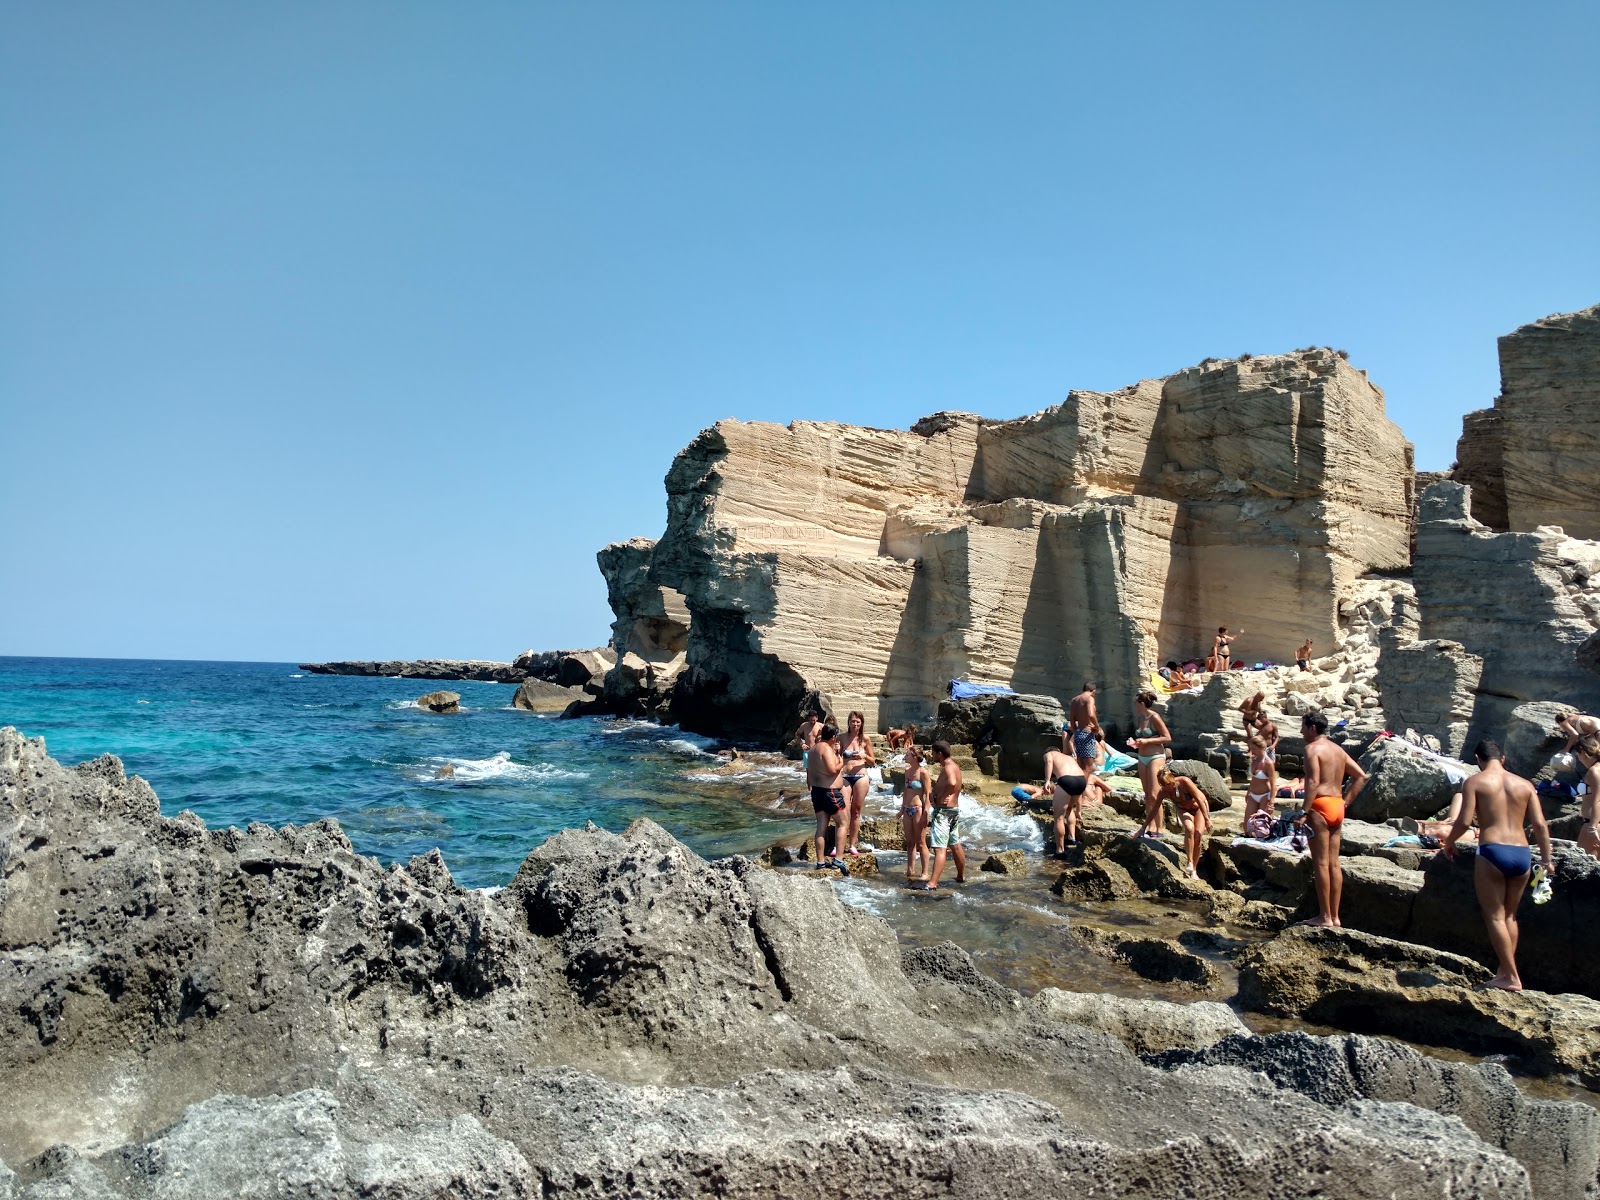 Foto von Spiaggia Di Cala Rossa wilde gegend